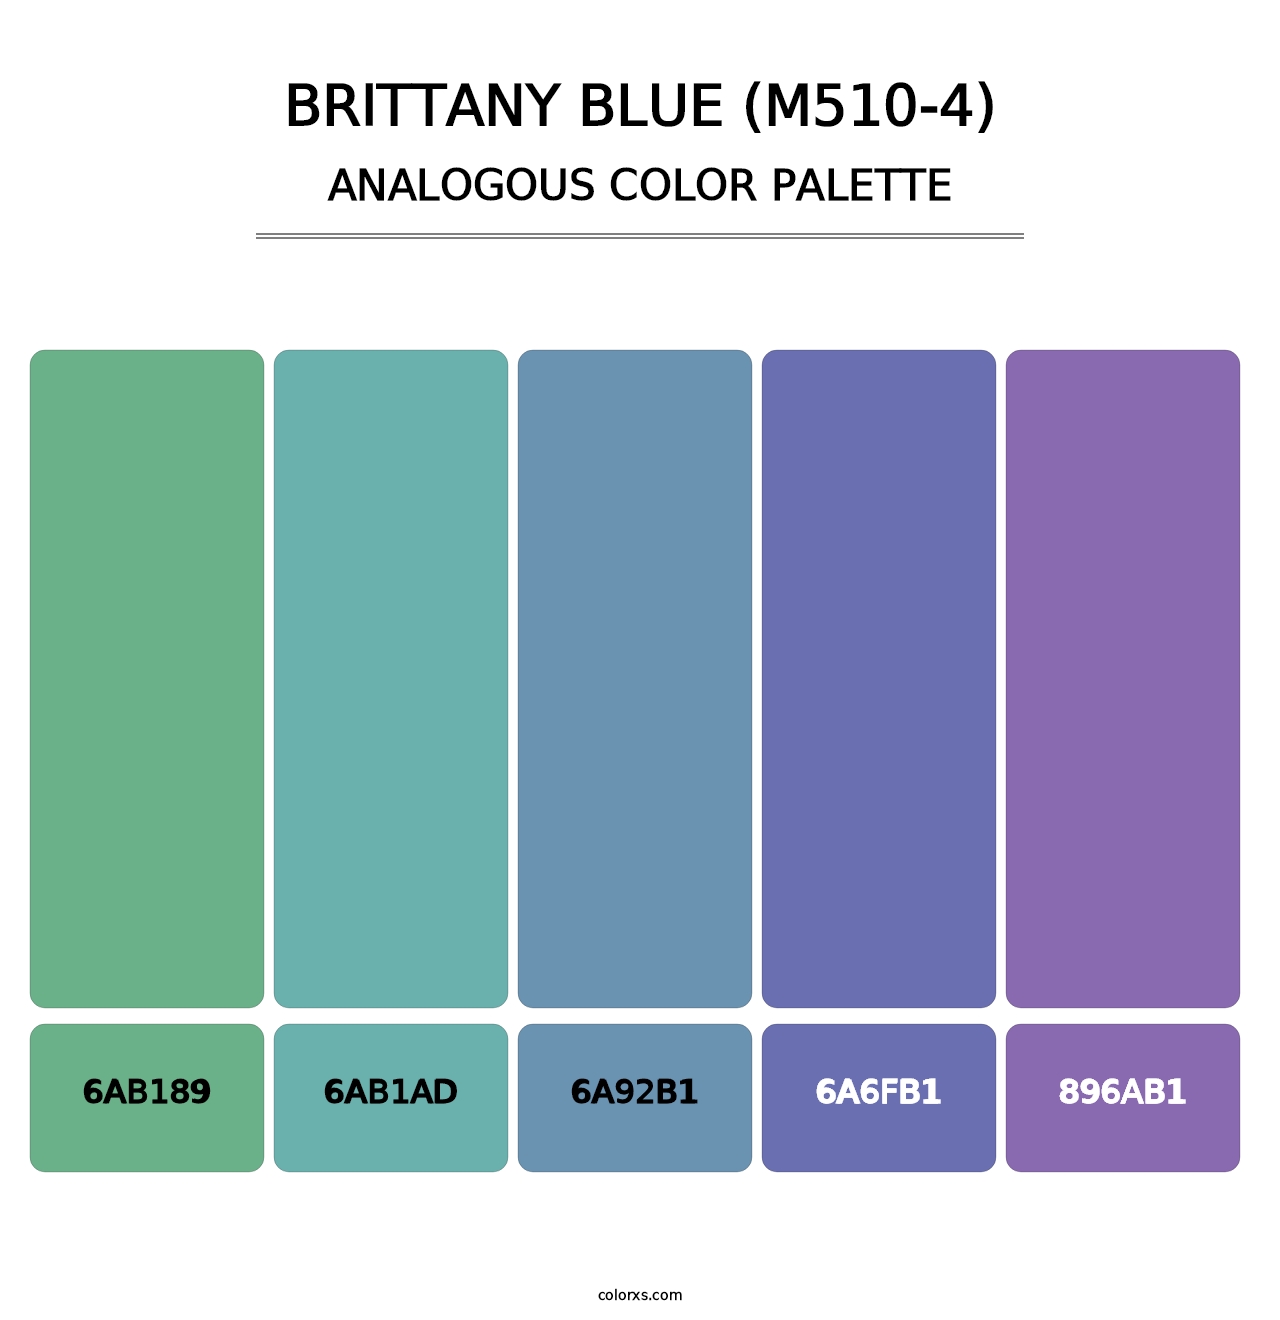 Brittany Blue (M510-4) - Analogous Color Palette